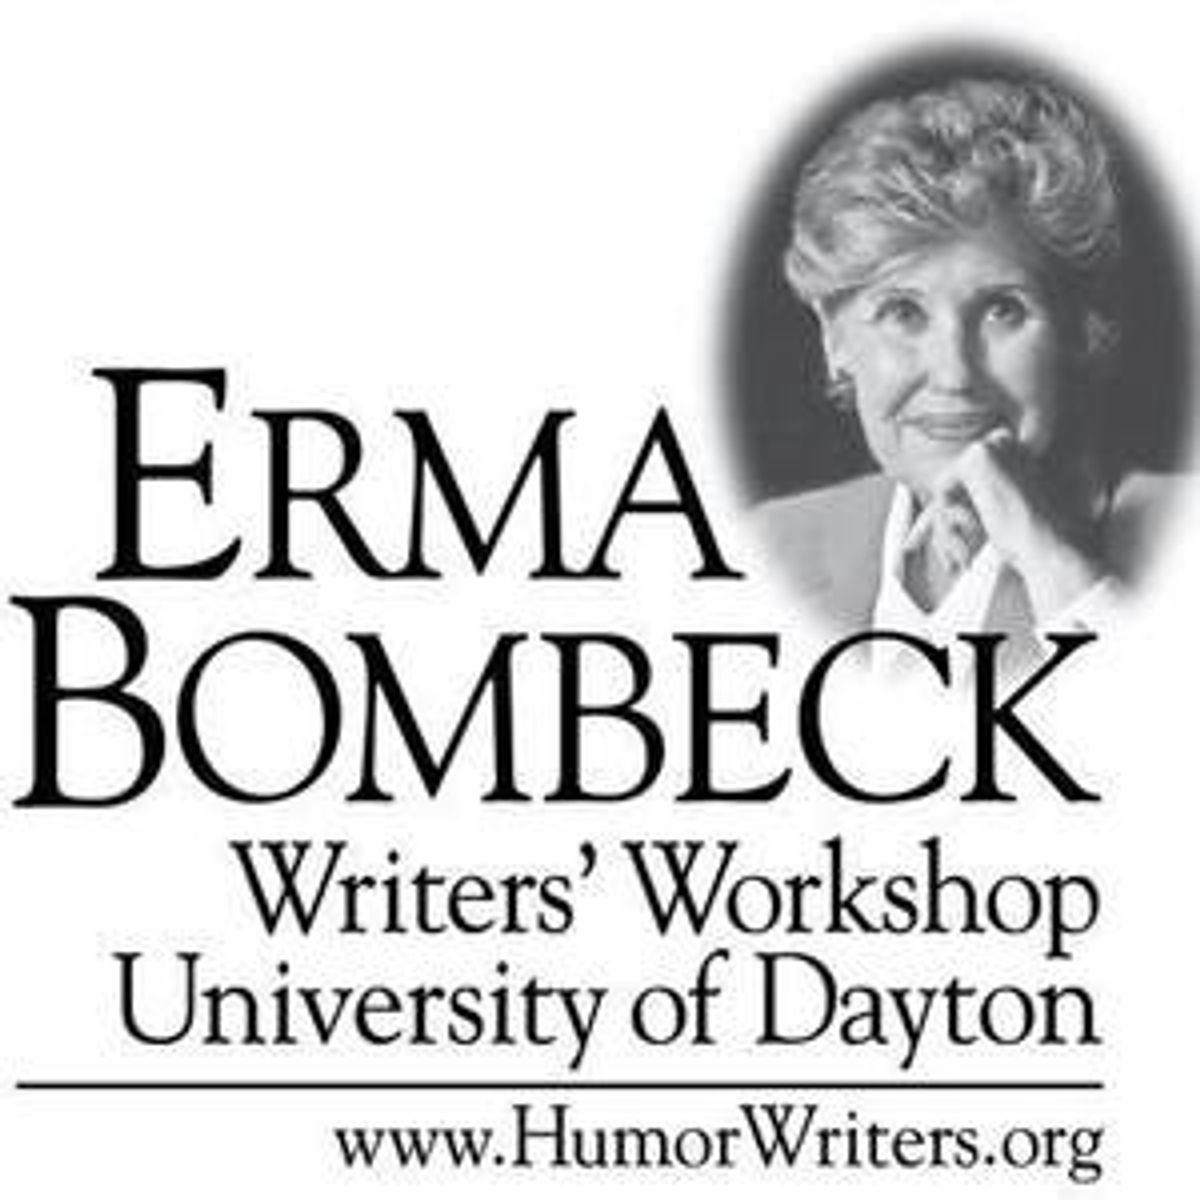 Erma Bombeck Spirit Still Alive Through Writers’ Workshop